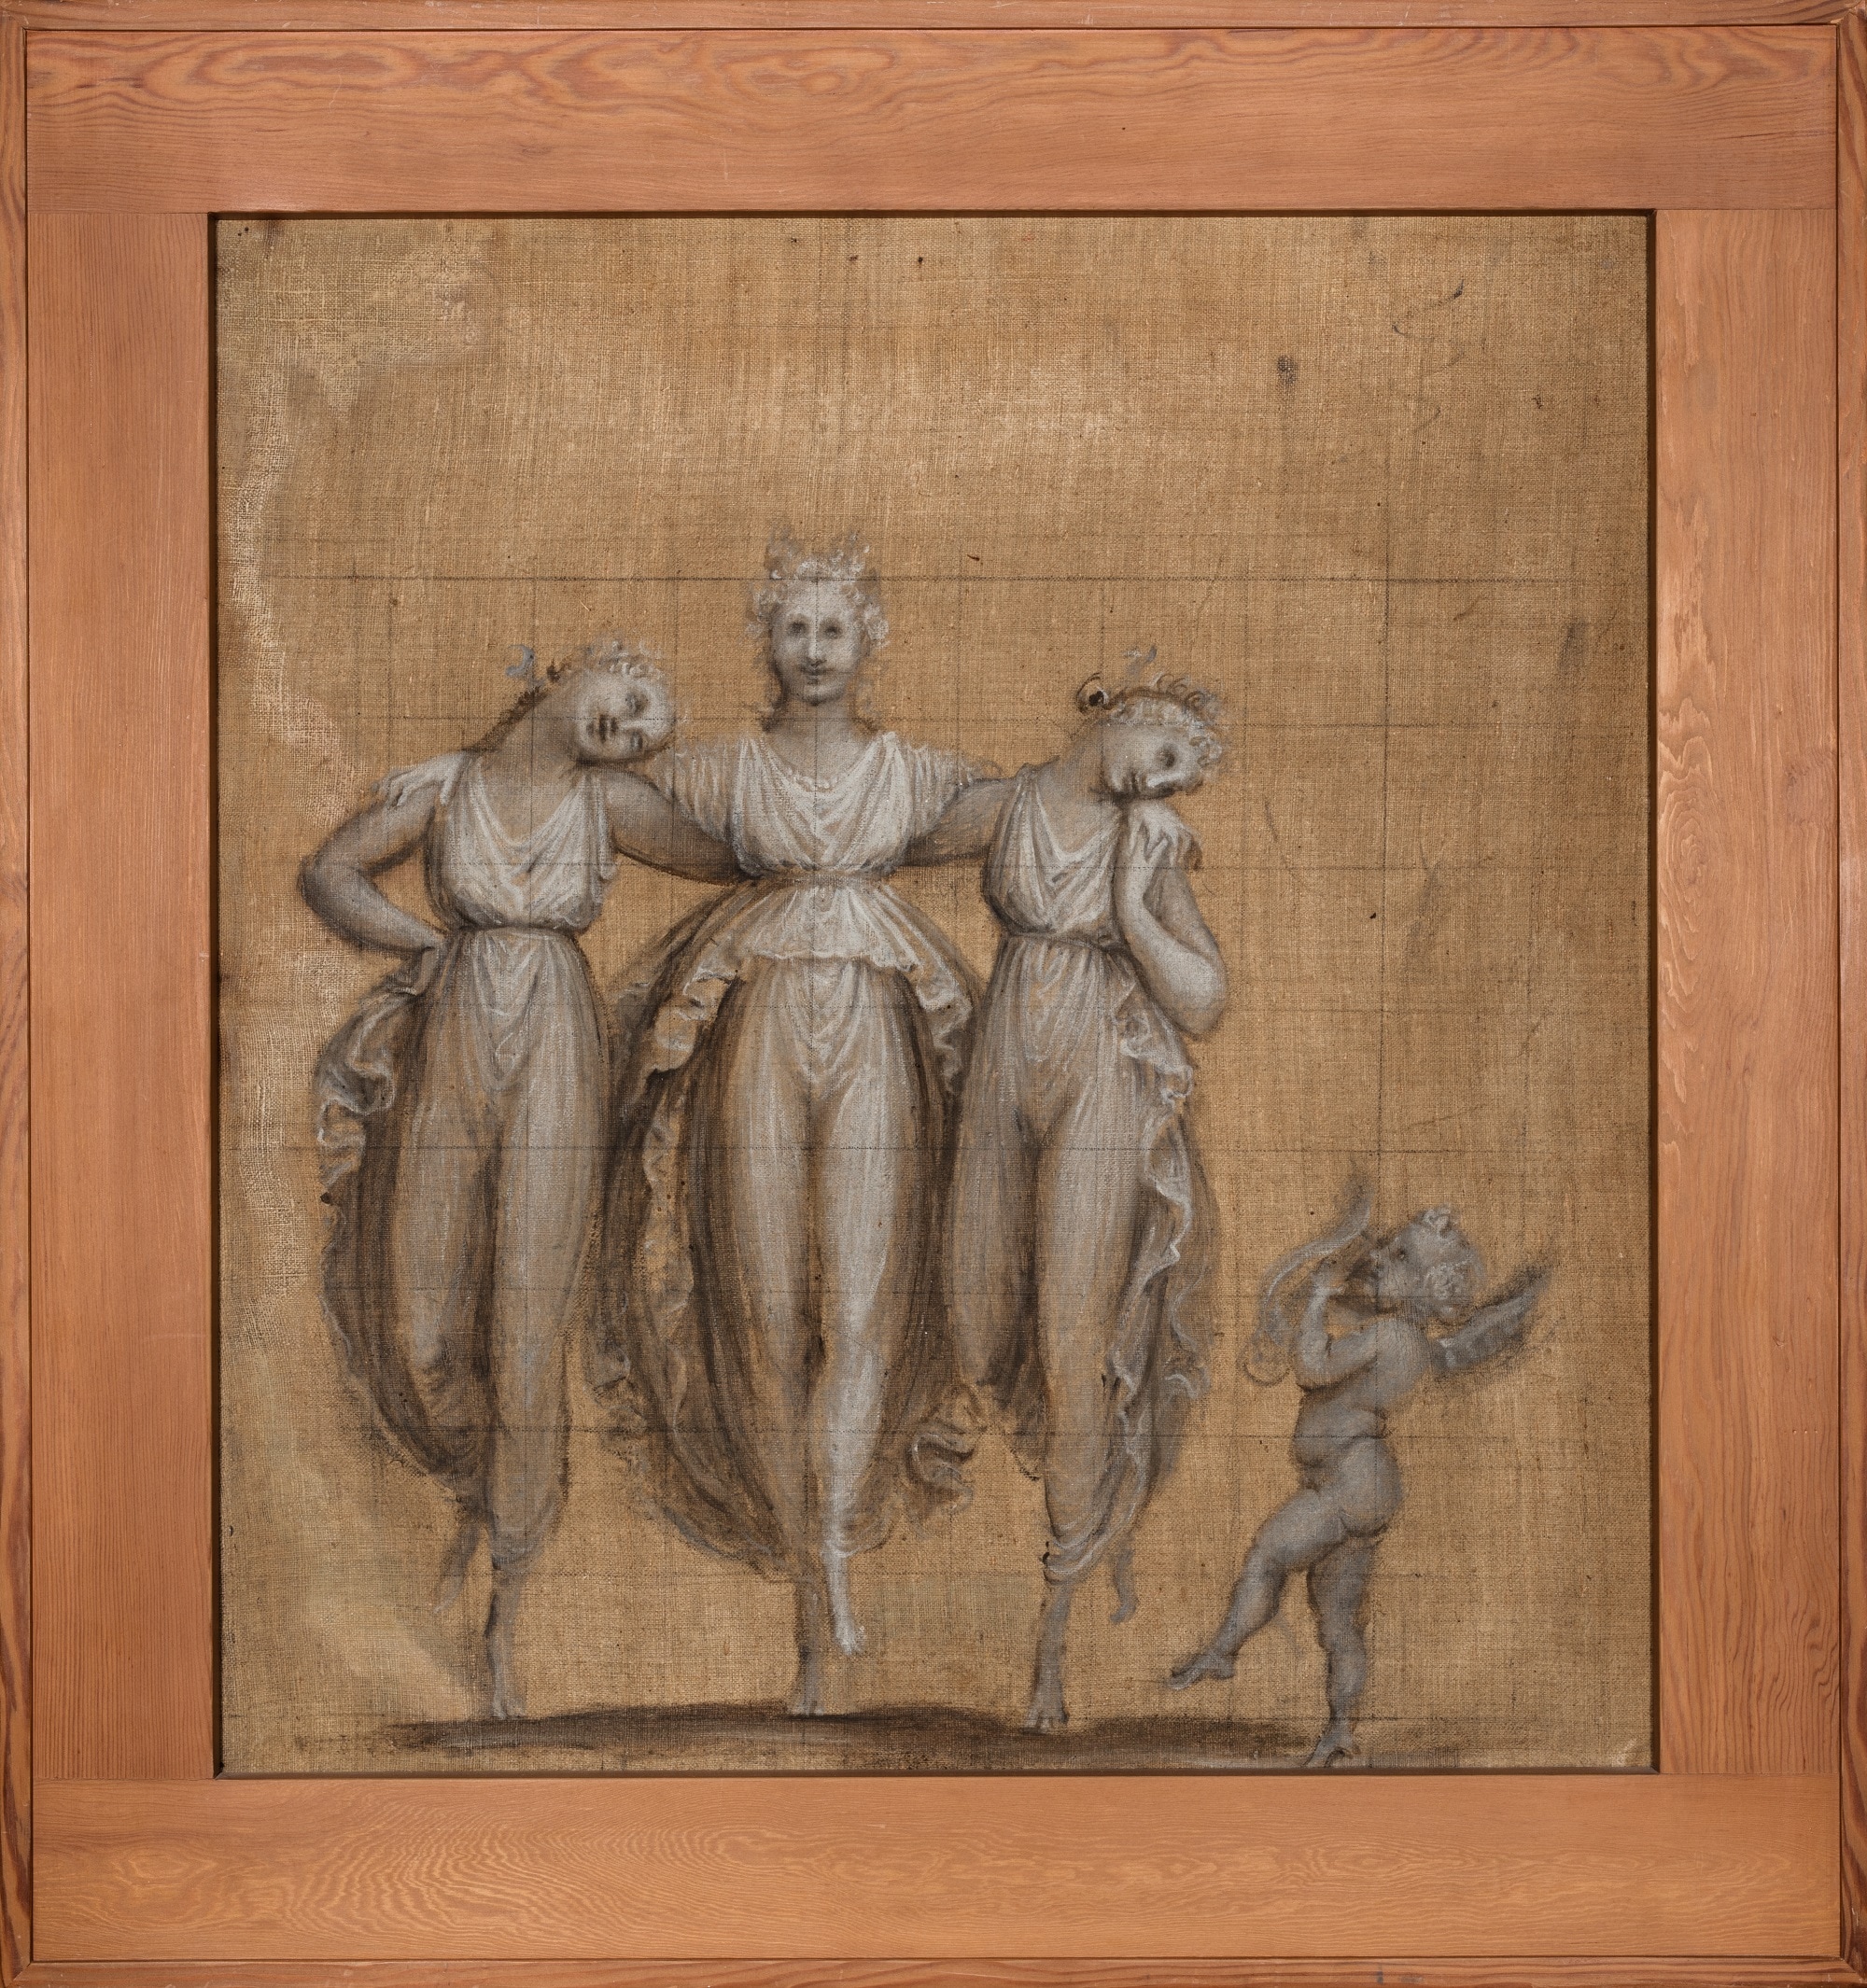 Antonio Canova (1757 – 1822), Danza delle Grazie con amorino che suona la cetra, 1806 c., Tecnica mista su tela, 65,5x61cm., Bassano del Grappa, Museo Civico